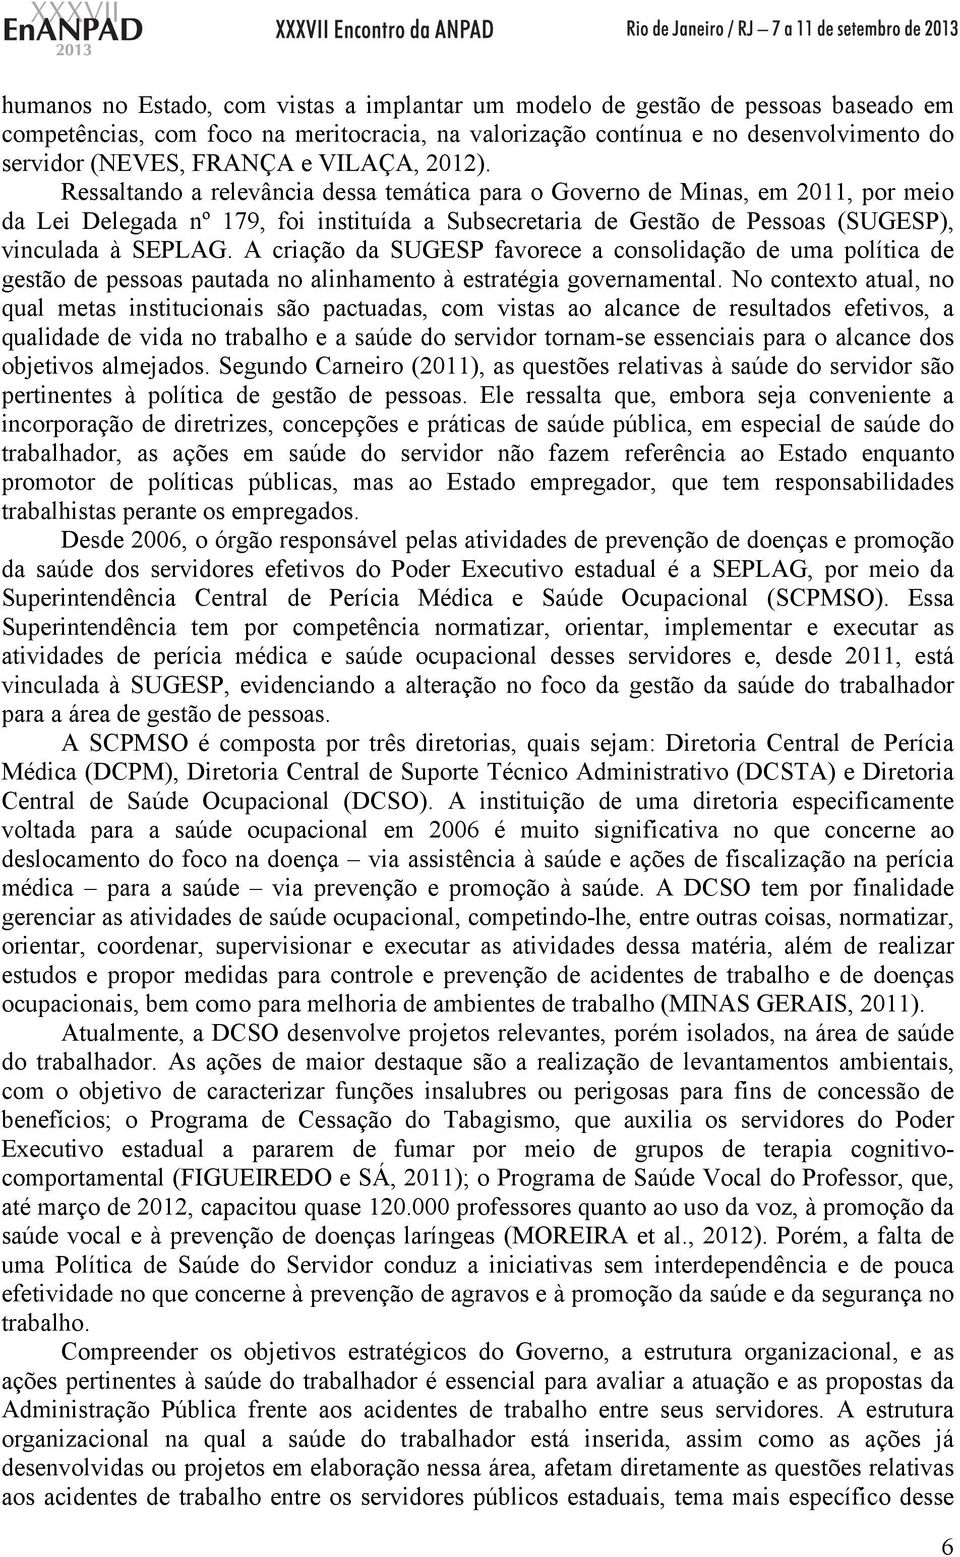 Ressaltando a relevância dessa temática para o Governo de Minas, em 2011, por meio da Lei Delegada nº 179, foi instituída a Subsecretaria de Gestão de Pessoas (SUGESP), vinculada à SEPLAG.